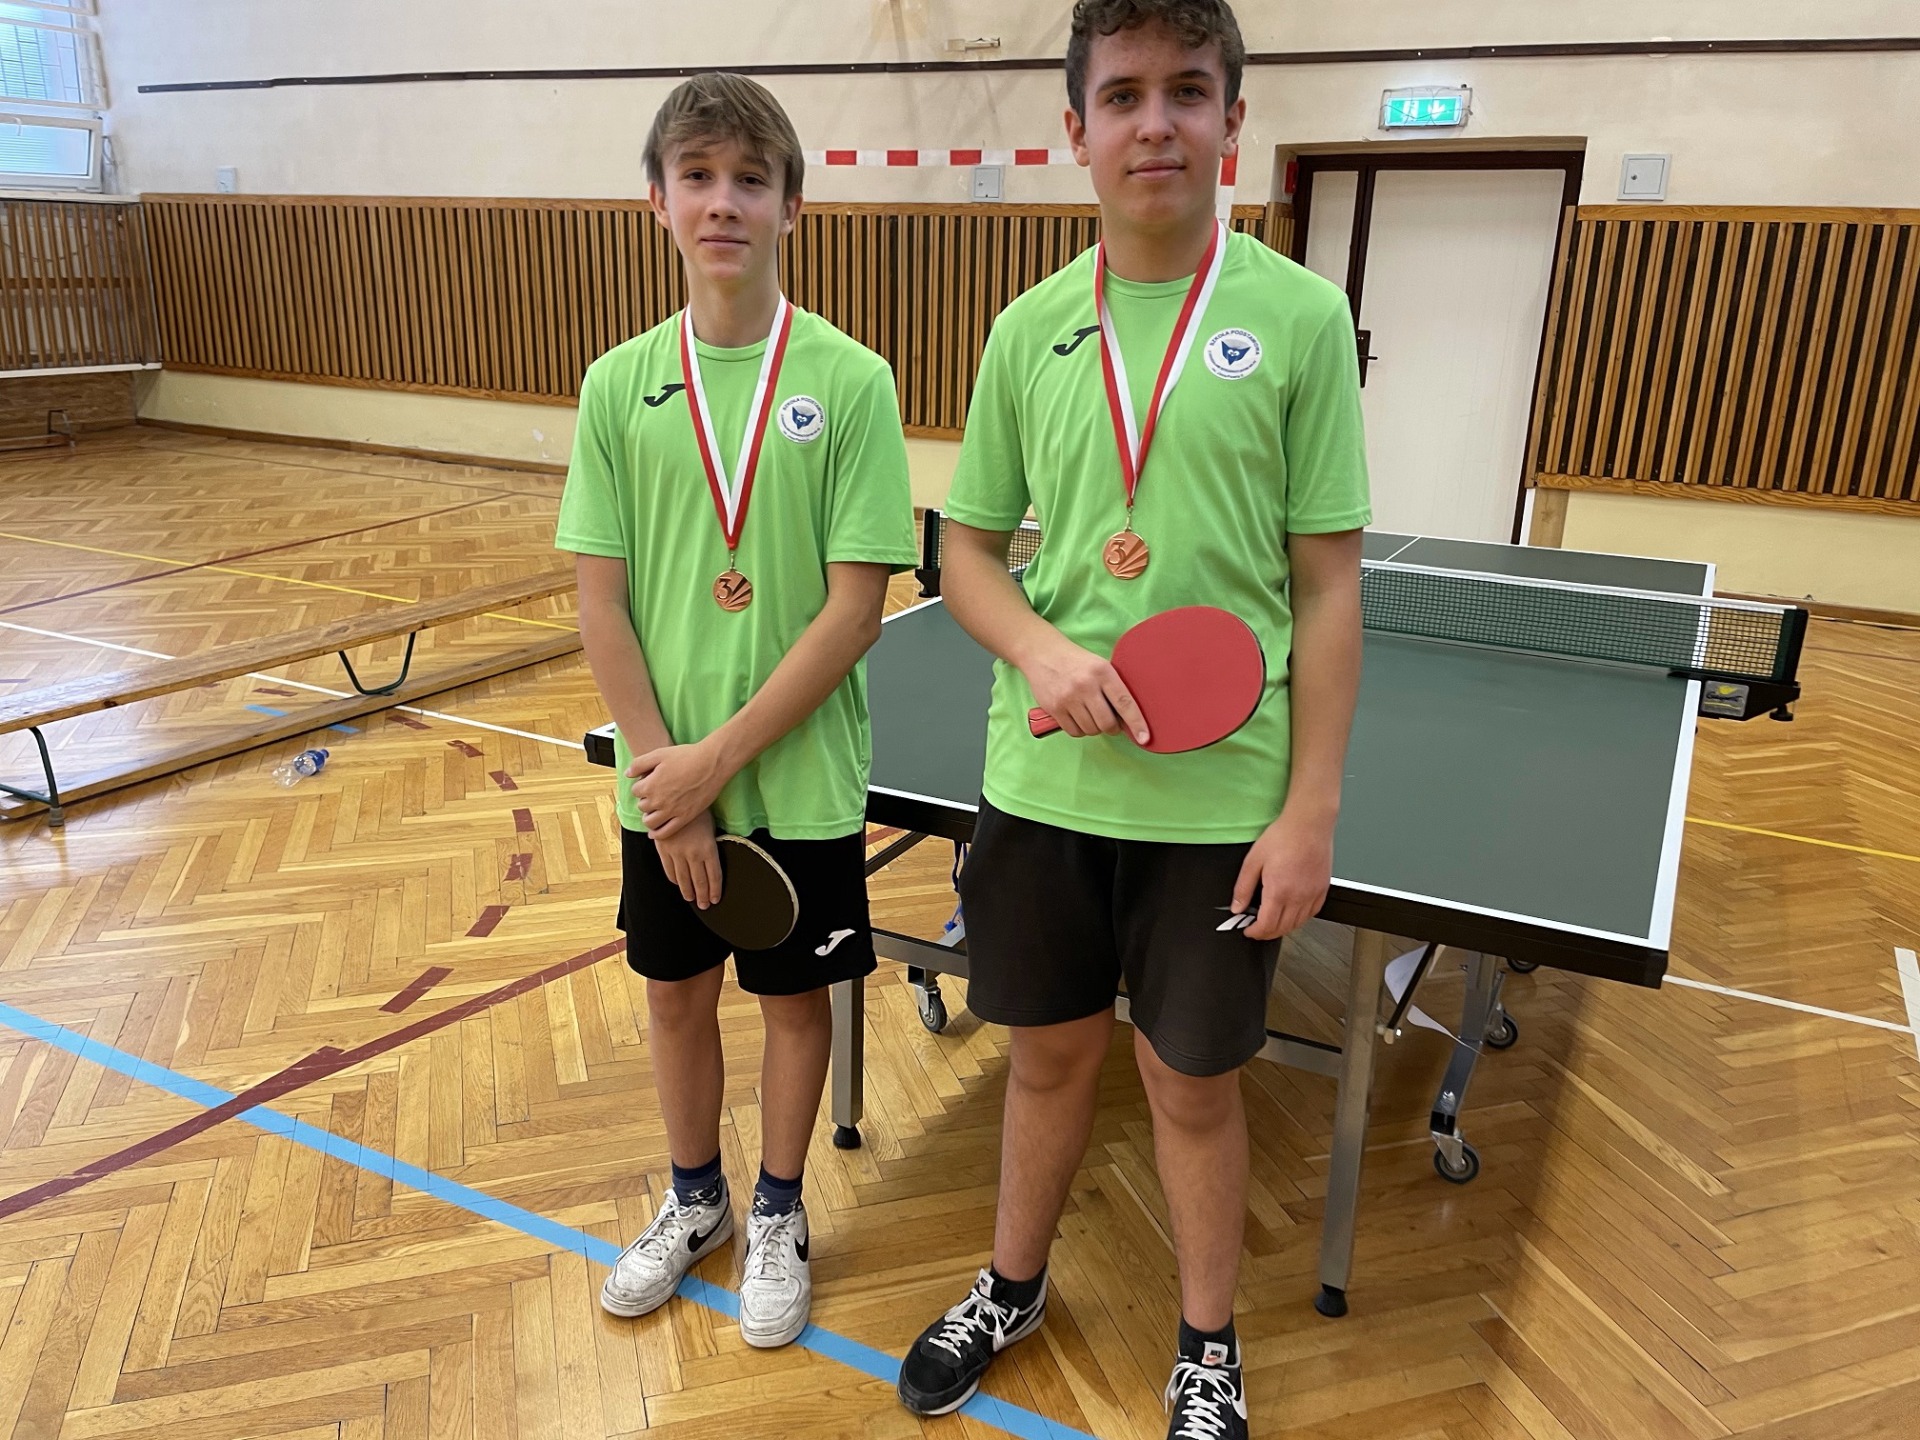 Zdjęcie przedstawia reprezentację chłopców gr. starsza, którzy ubrani są w zielone koszulki. W rękach trzymają paletki do tenisa stołowego a na szyi mają zawieszone medale.